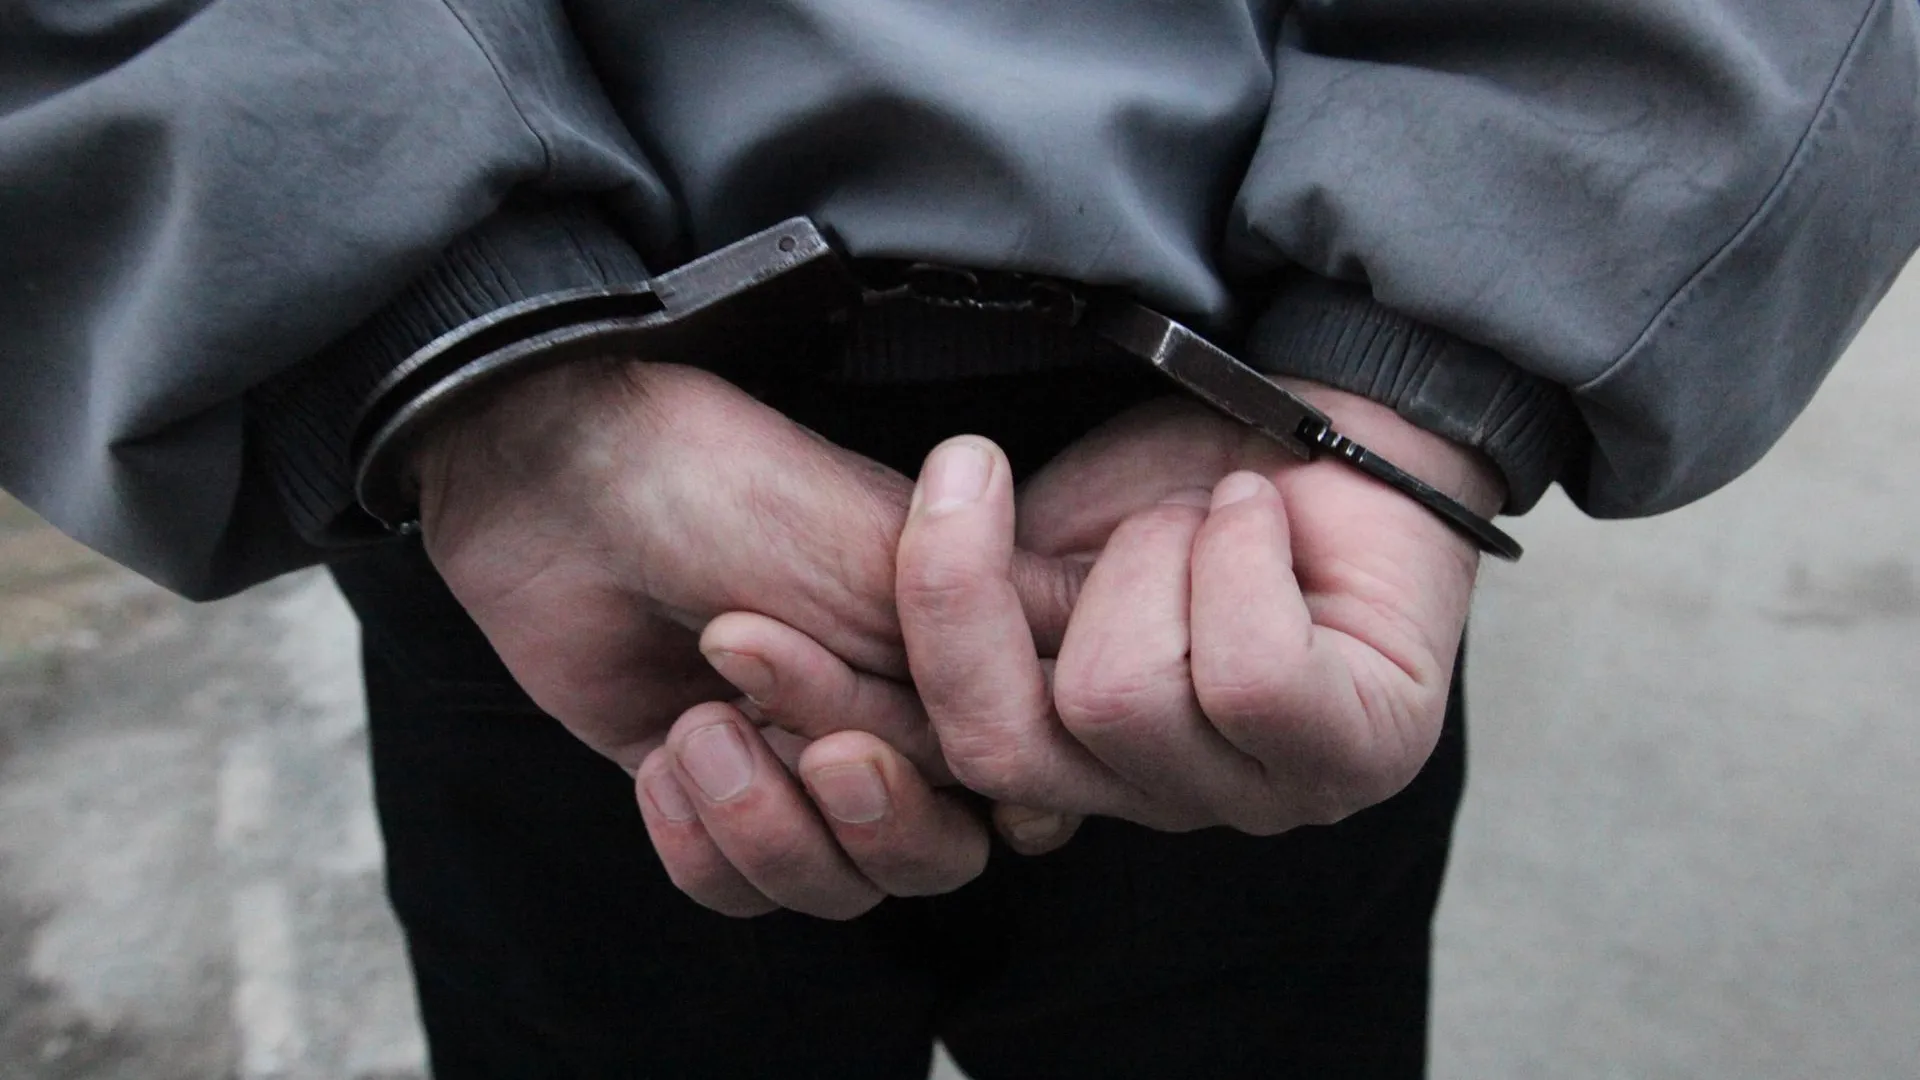 Предполагаемый организатор похищения бизнесмена задержан в Люберцах